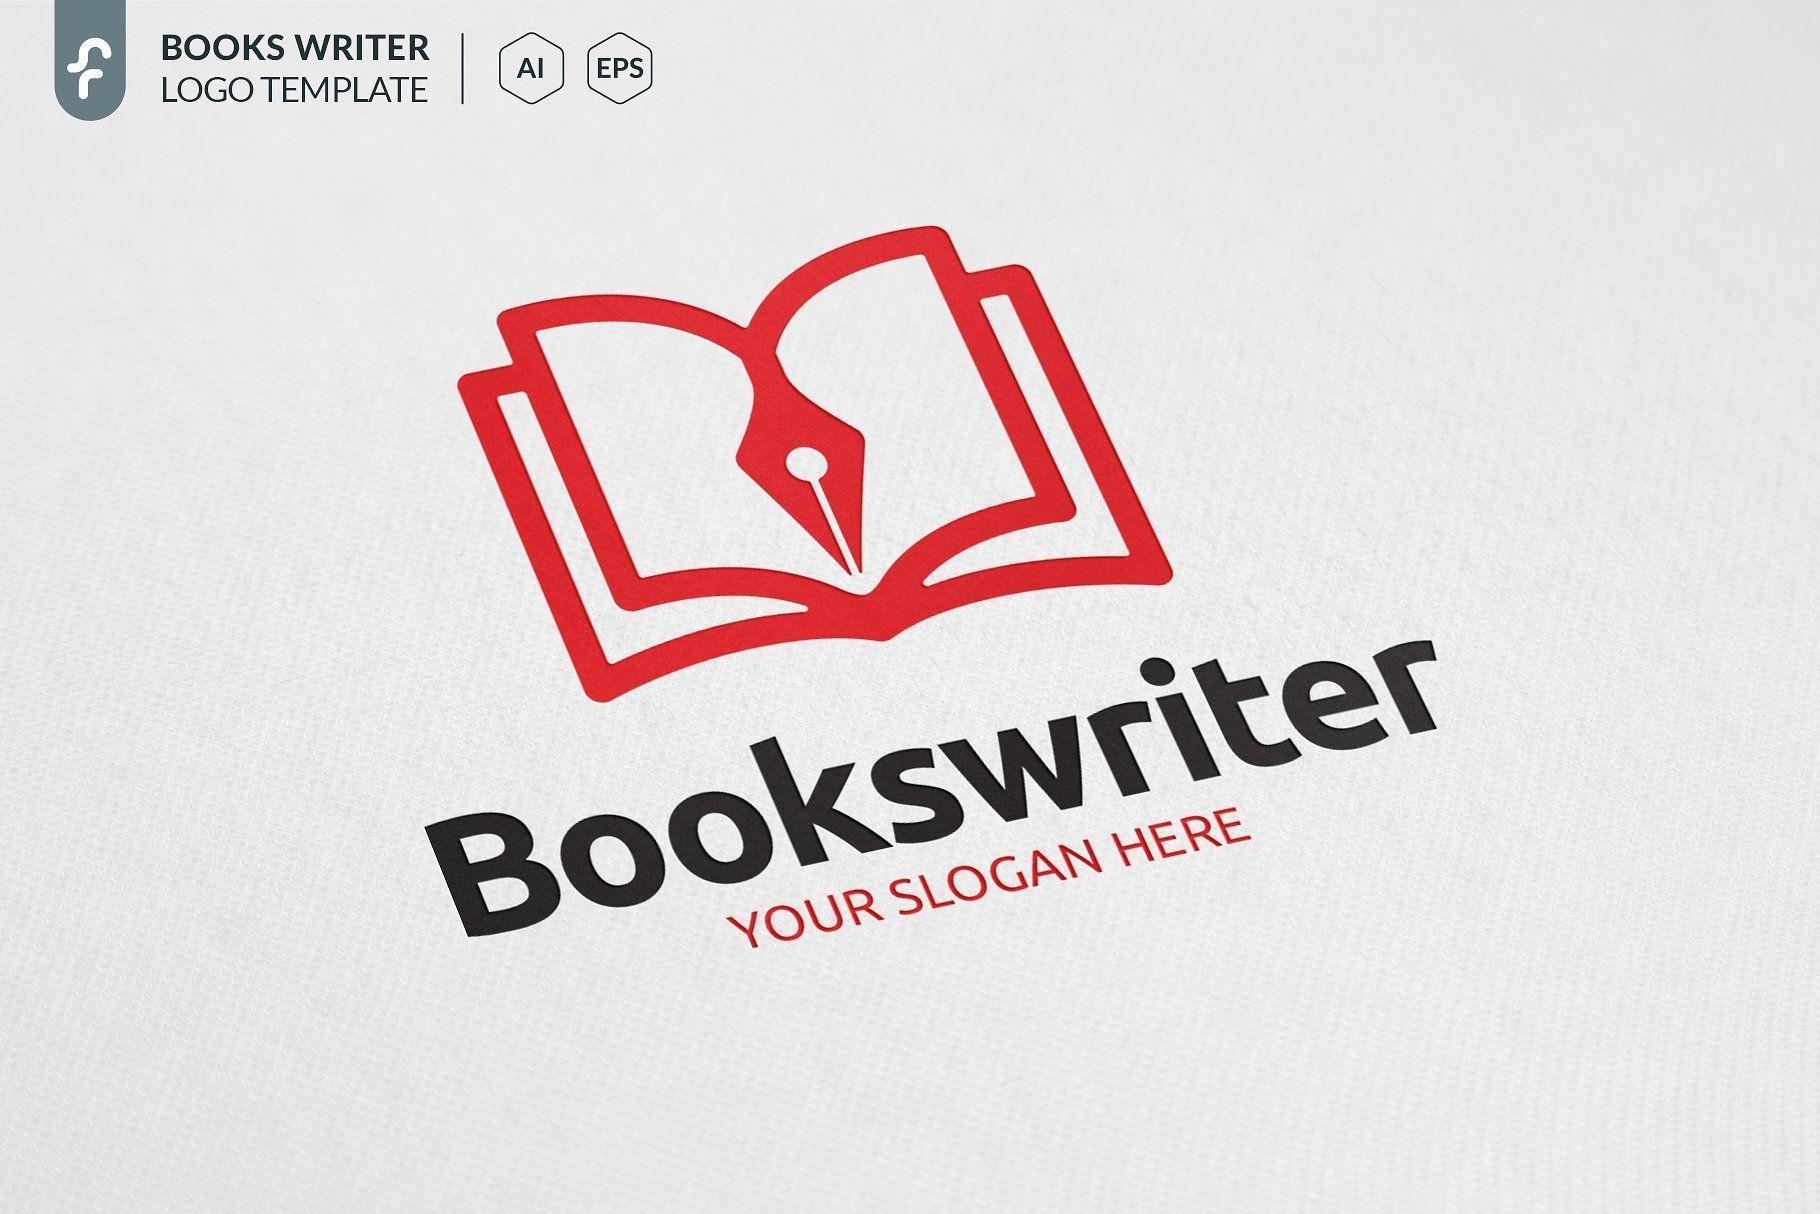 Writer Logo - Books Writer Logo Design #logo #design #book #branding #illustration ...